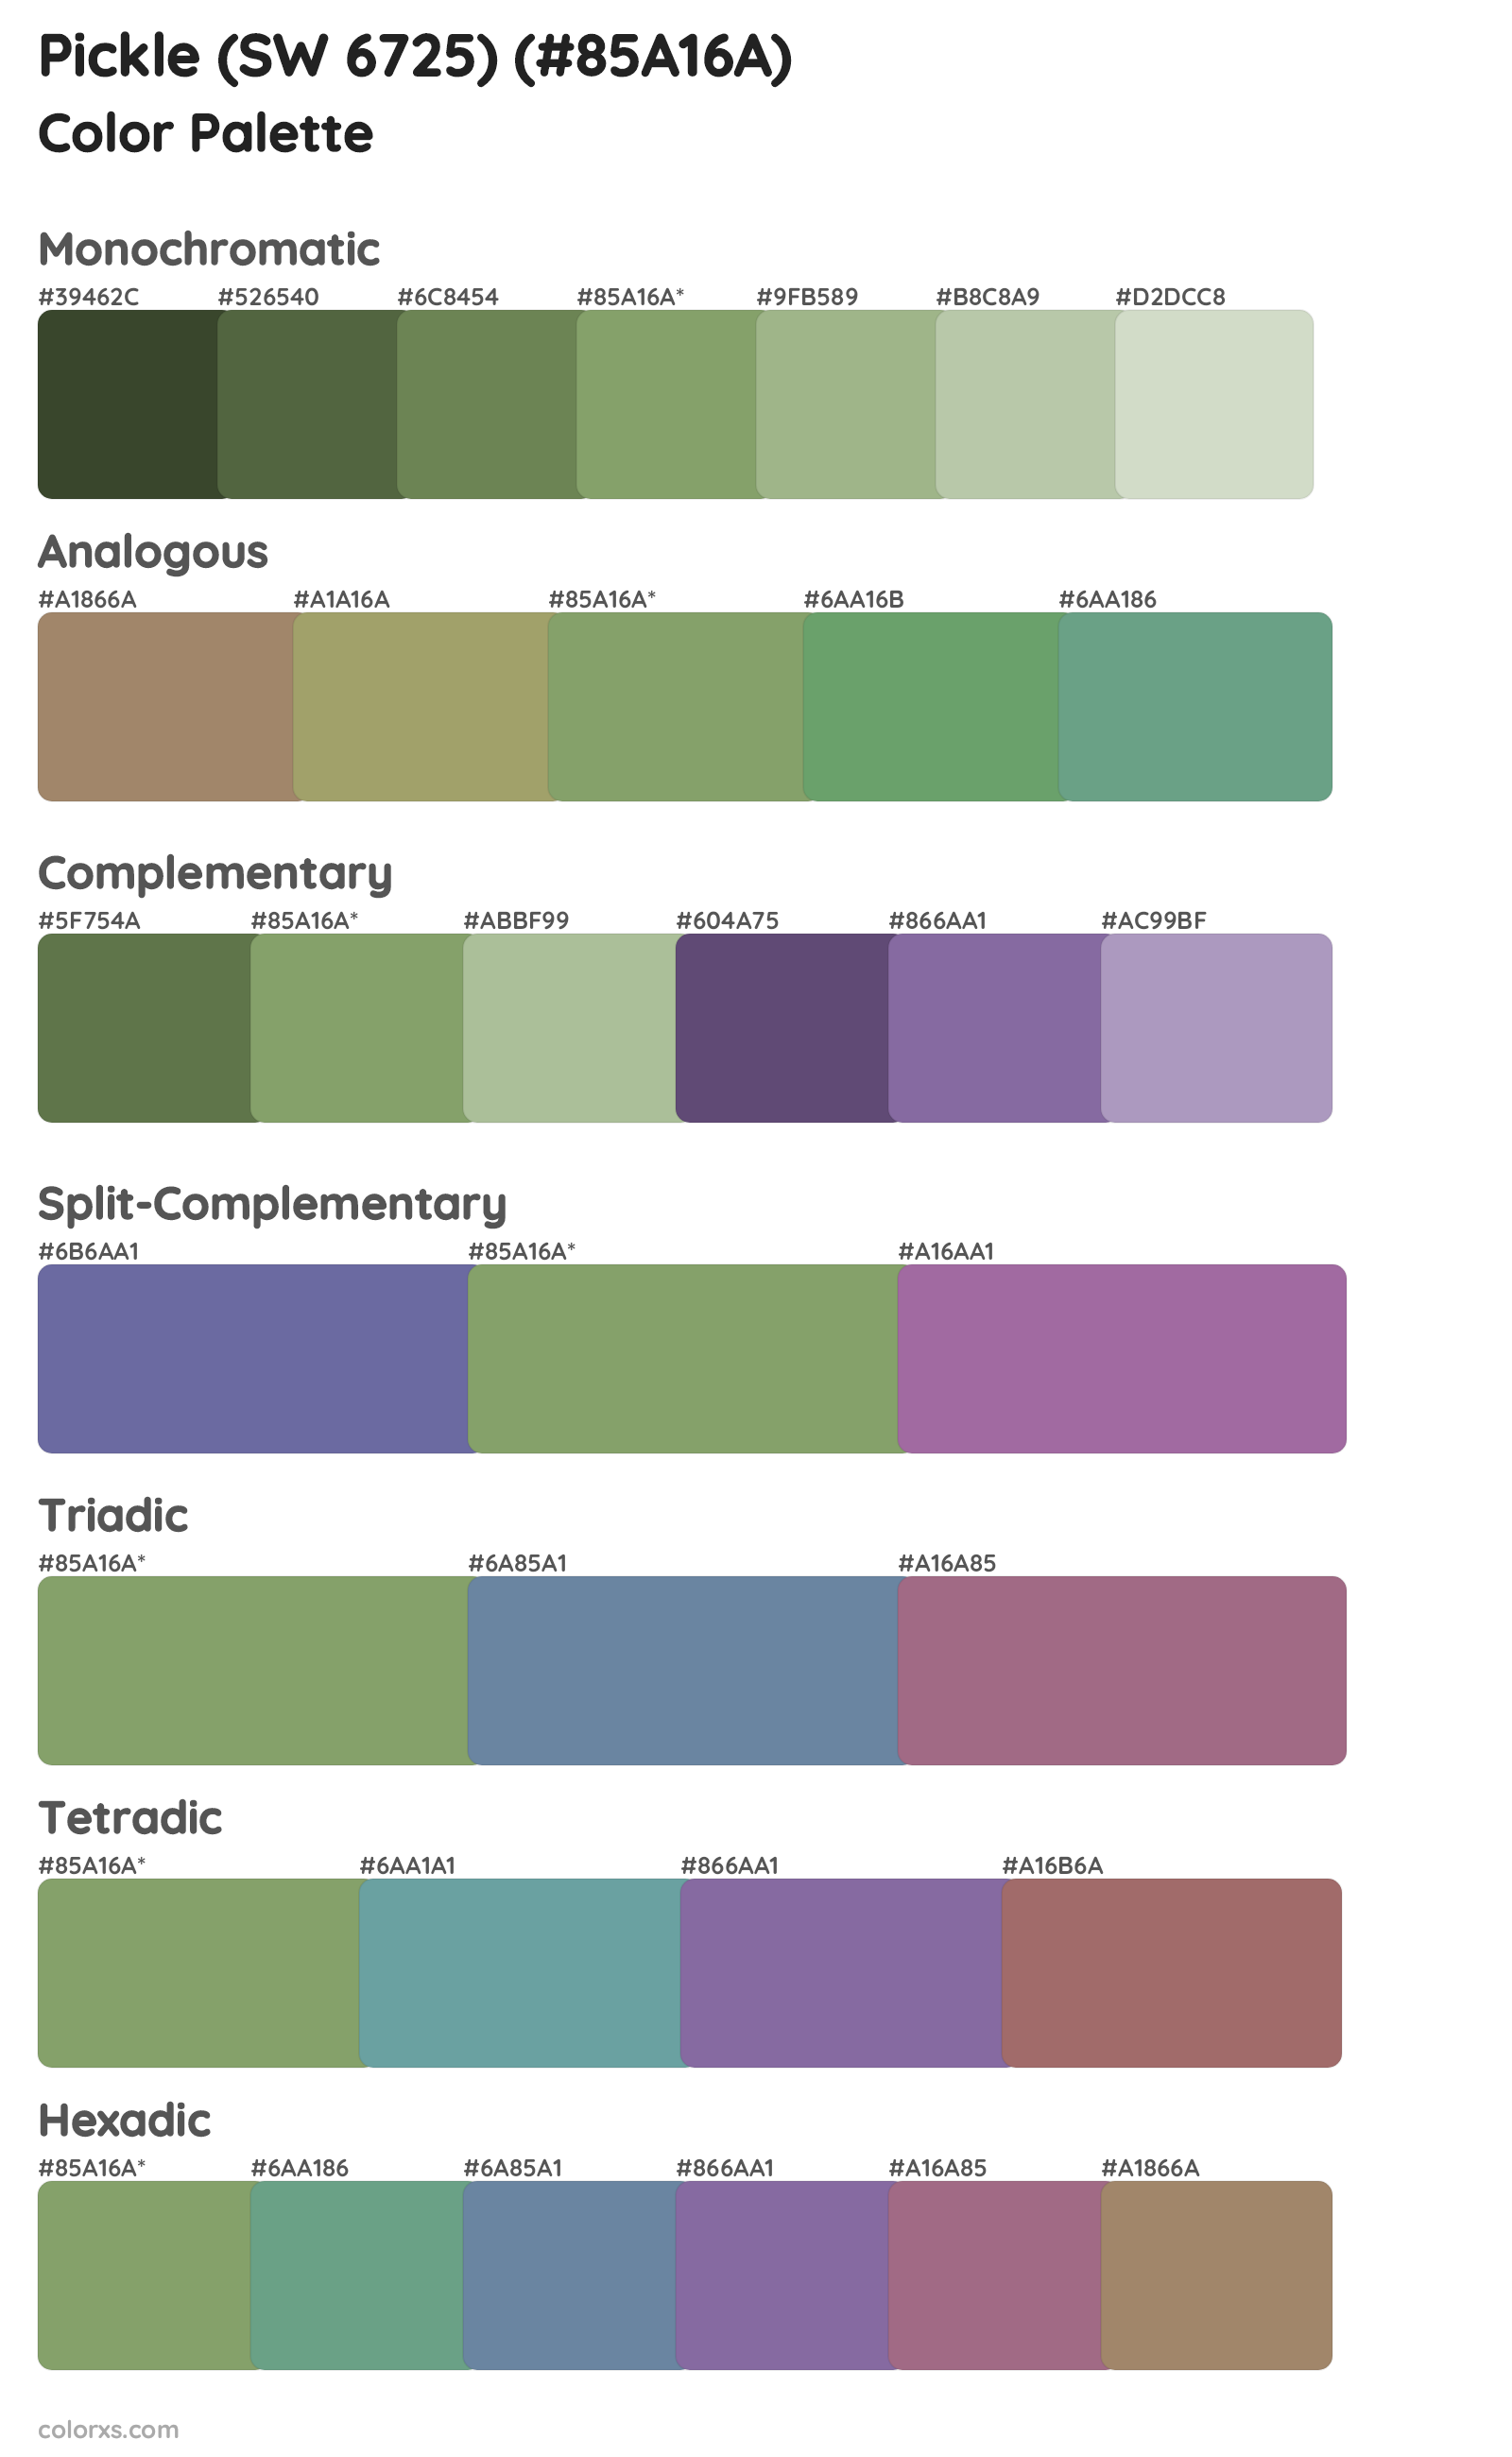 Pickle (SW 6725) Color Scheme Palettes